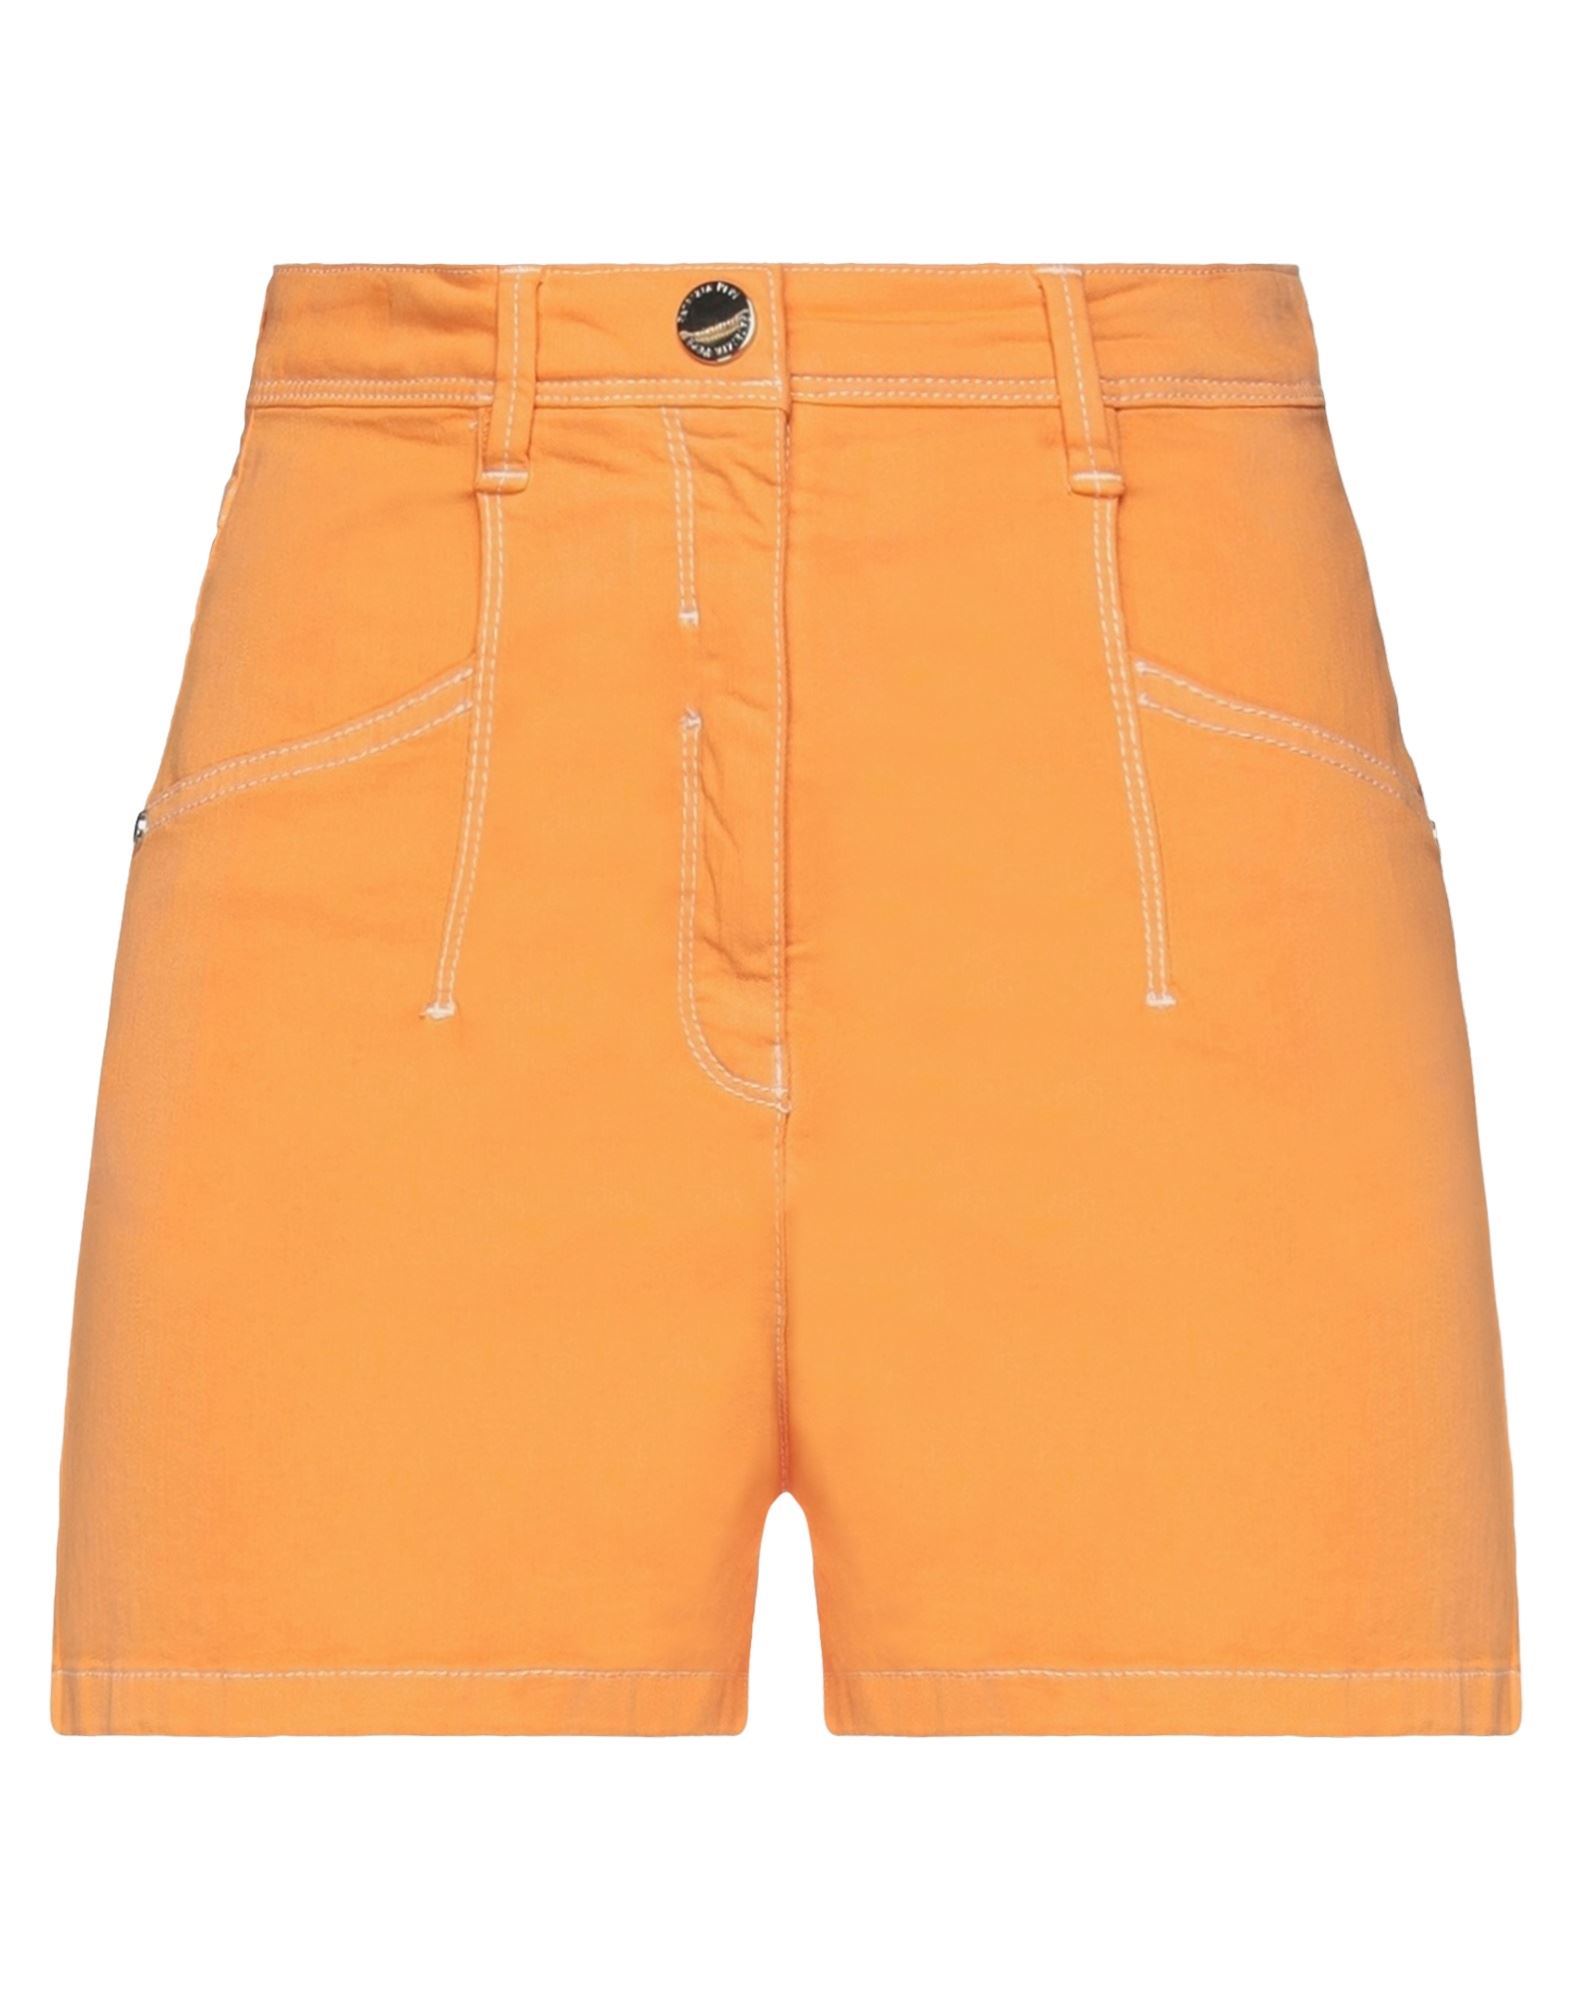 Patrizia Pepe Denim Shorts In Orange